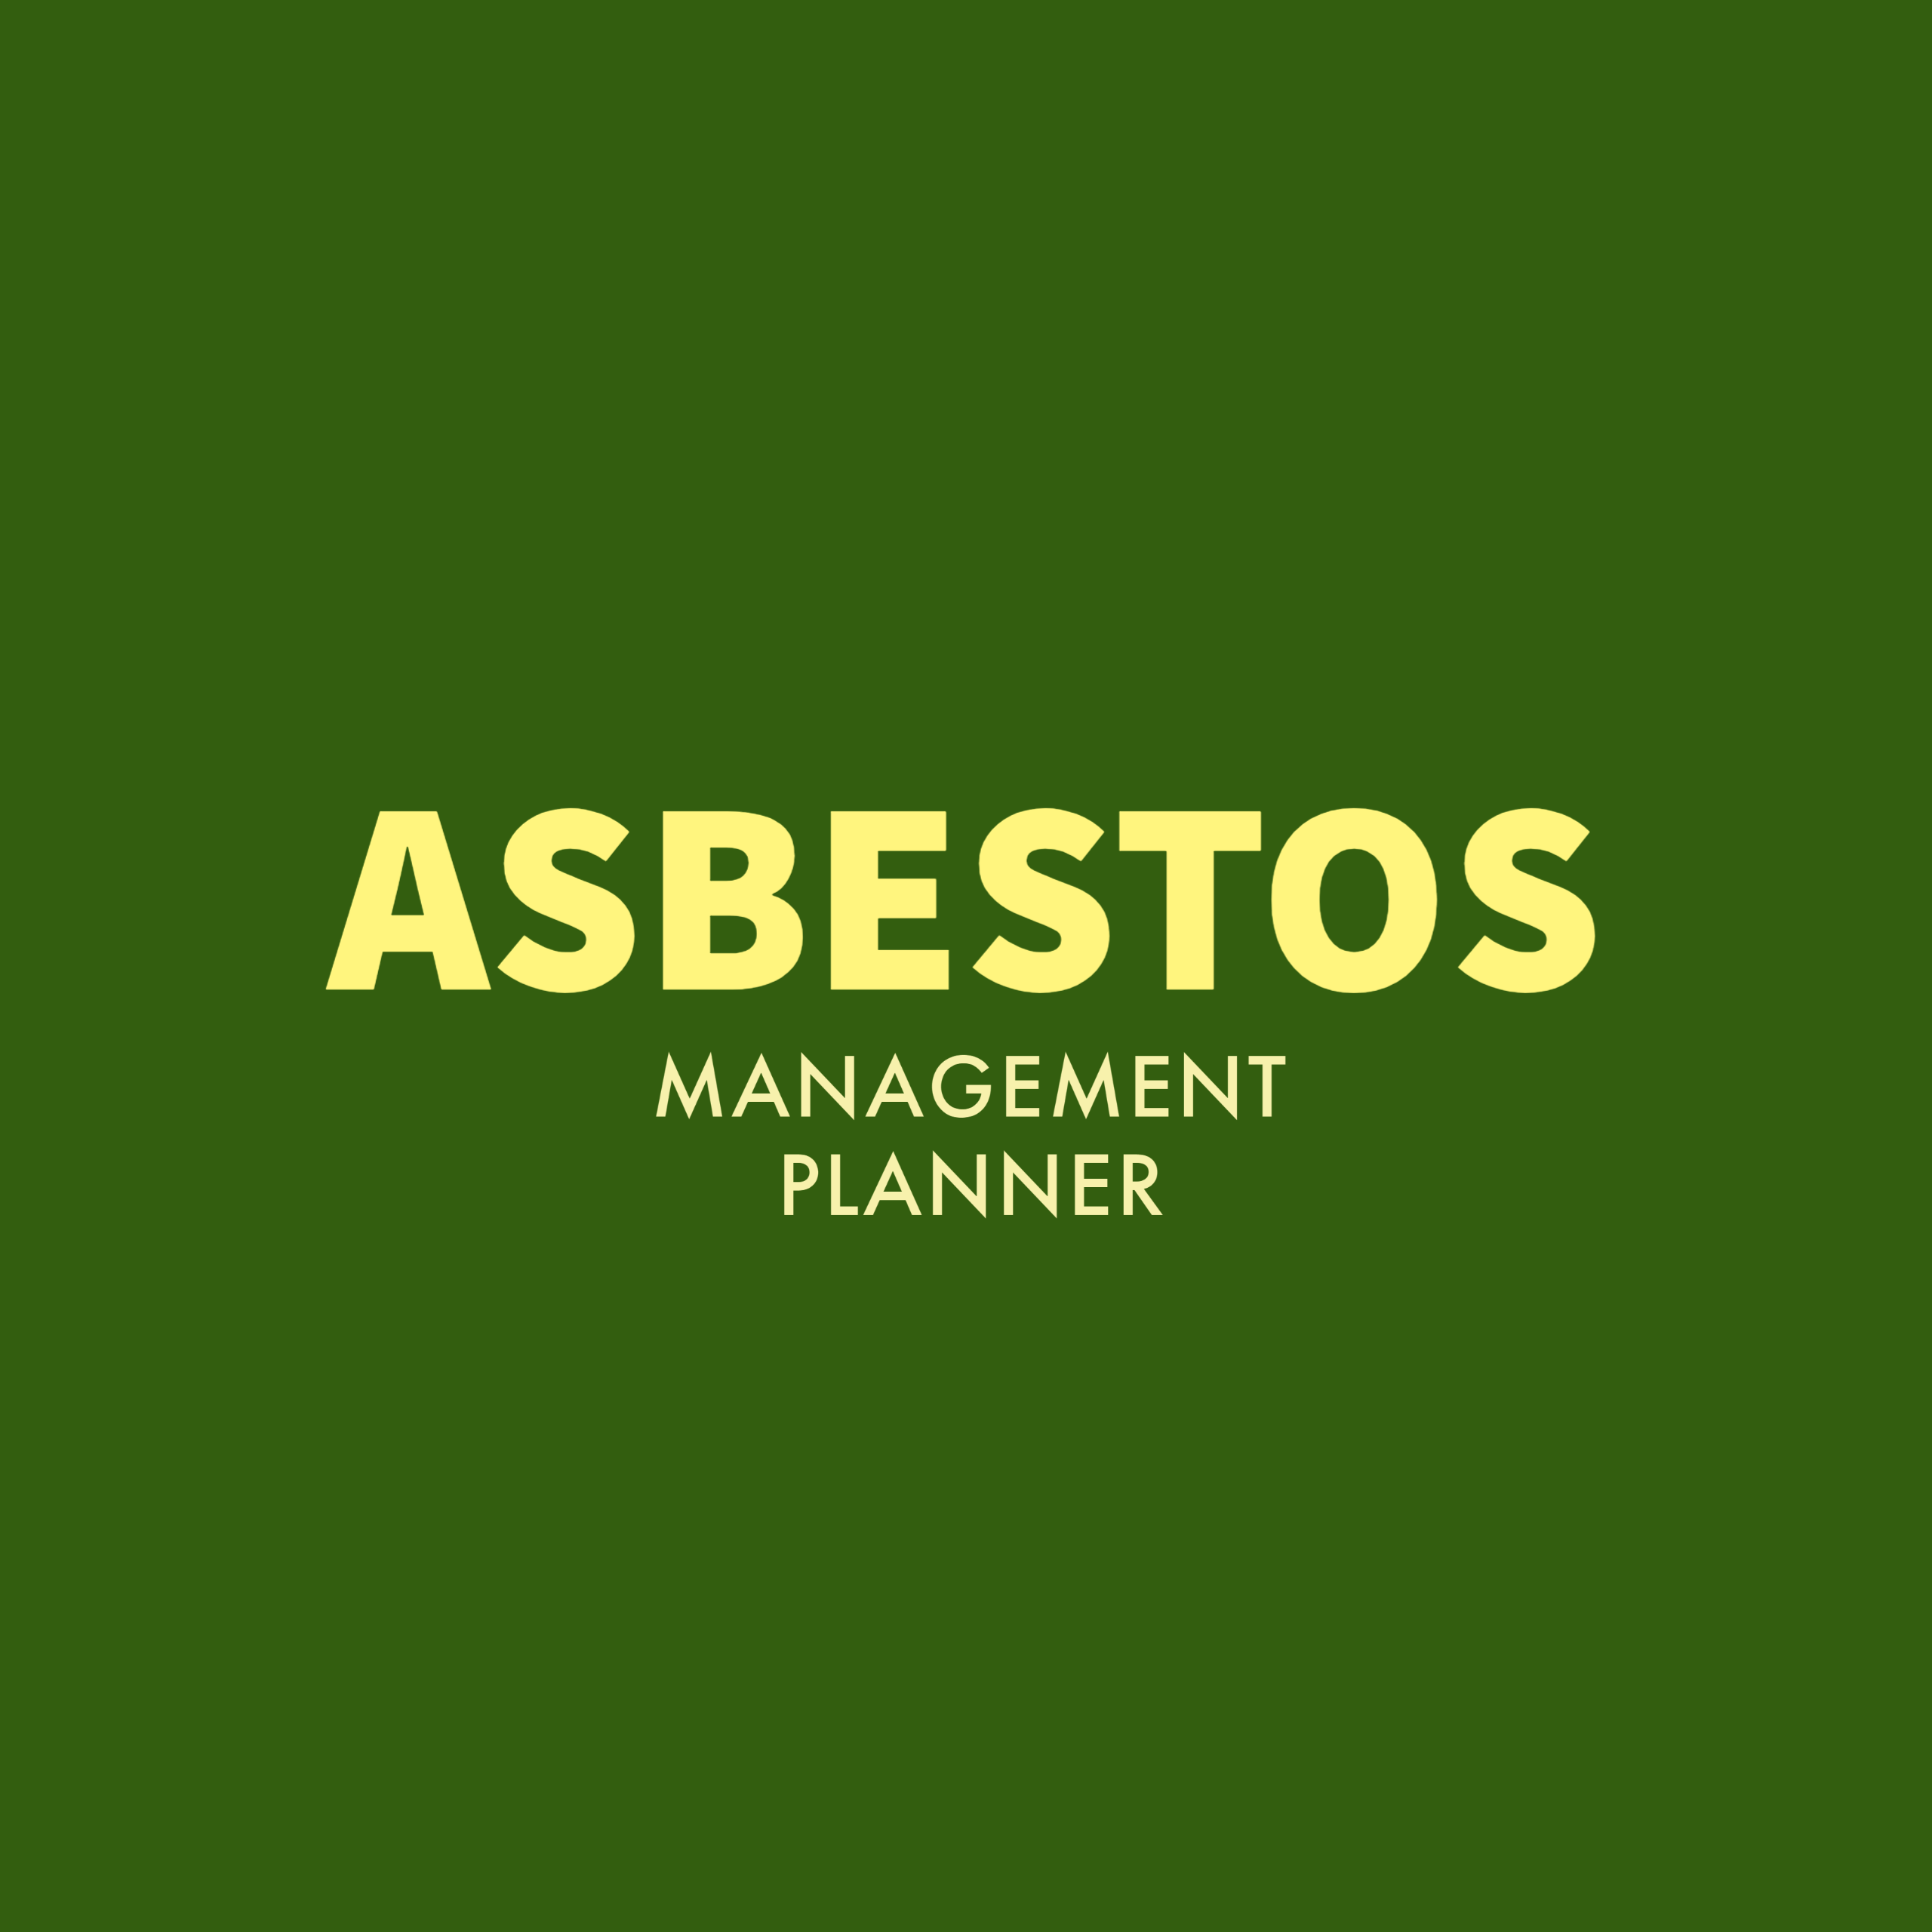 Asbestos Management Planner